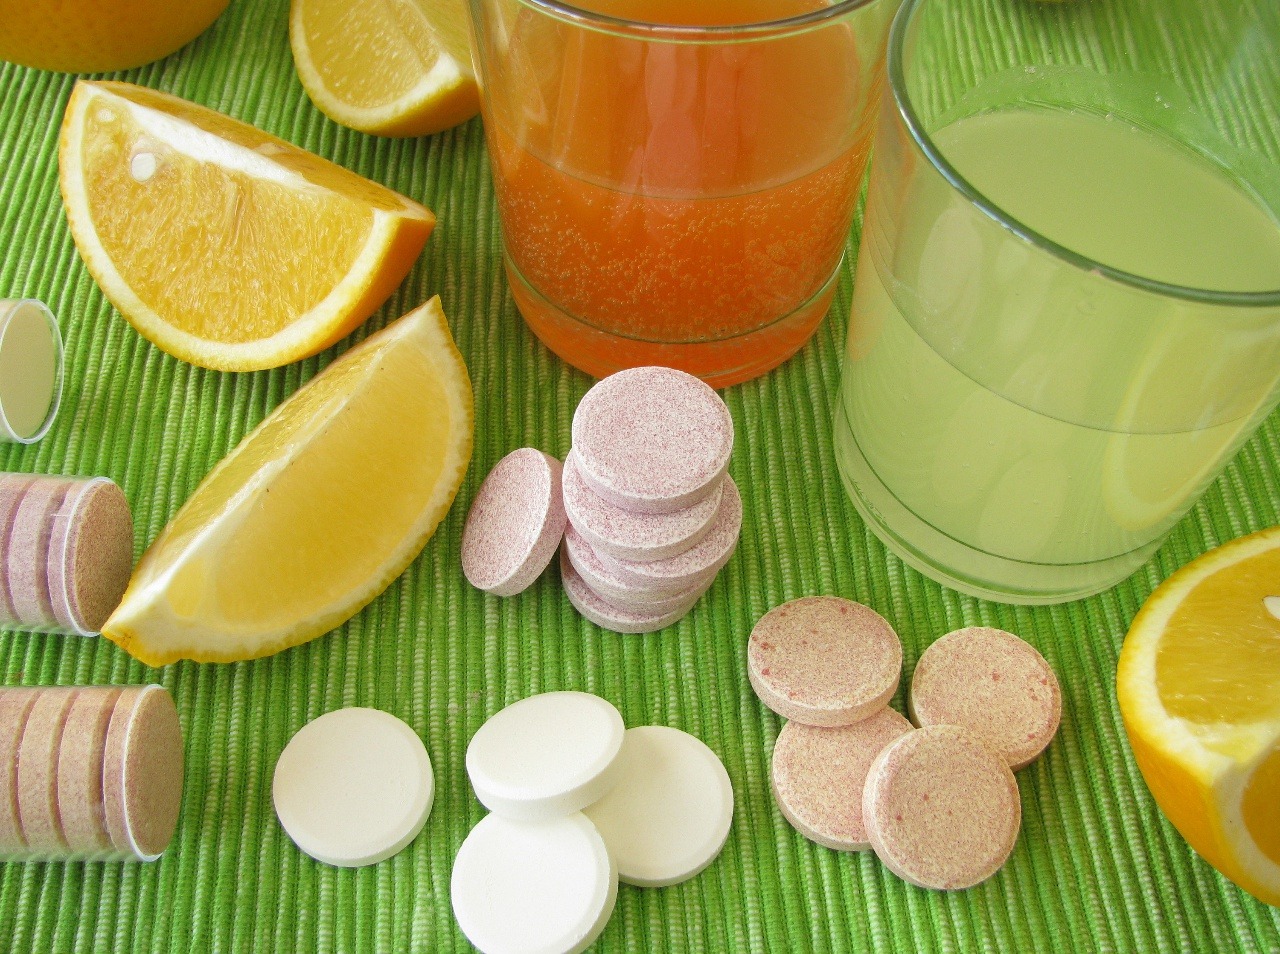 Nespoliehajte sa na vitamín C počas choroby!